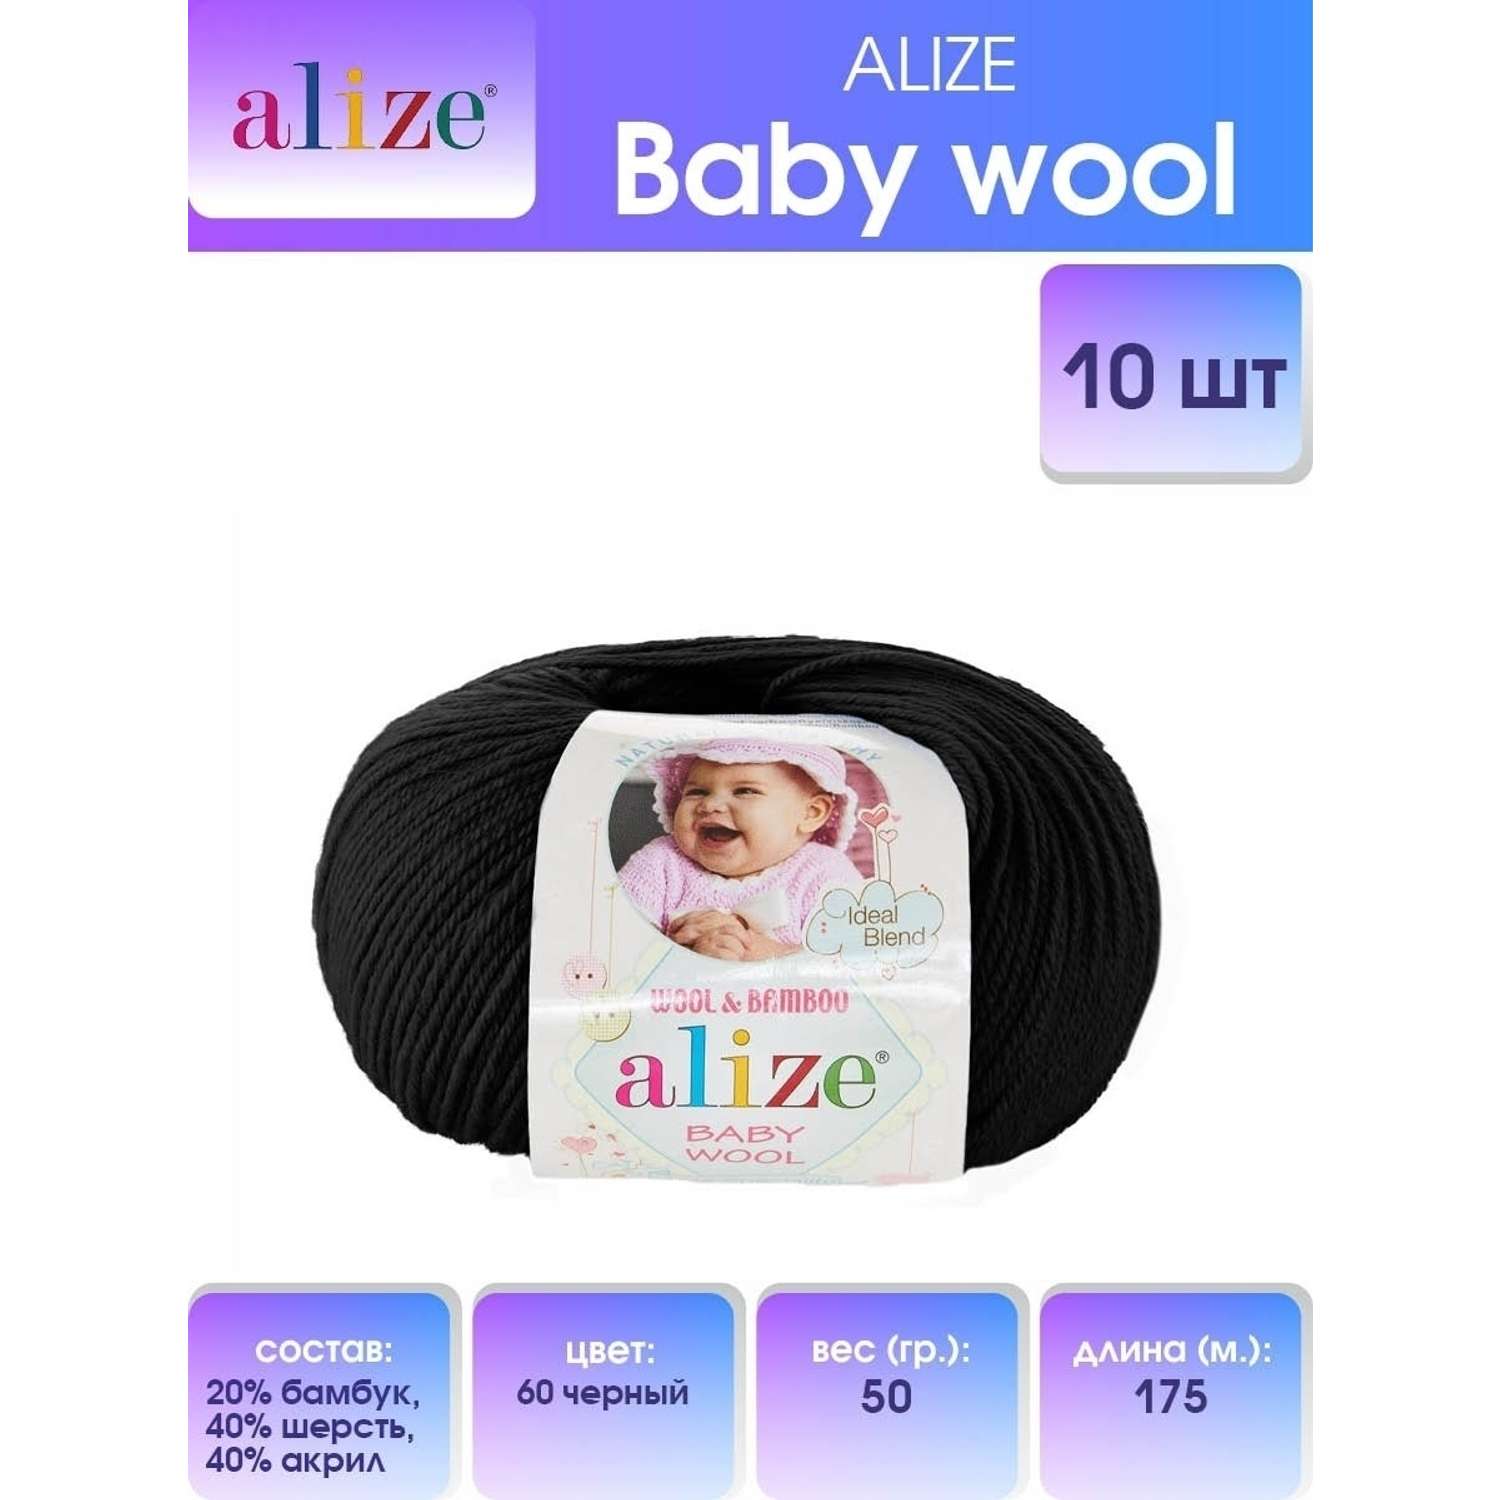 Пряжа для вязания Alize baby wool бамбук шерсть акрил мягкая 50 гр 175 м 60 черный 10 мотков - фото 1